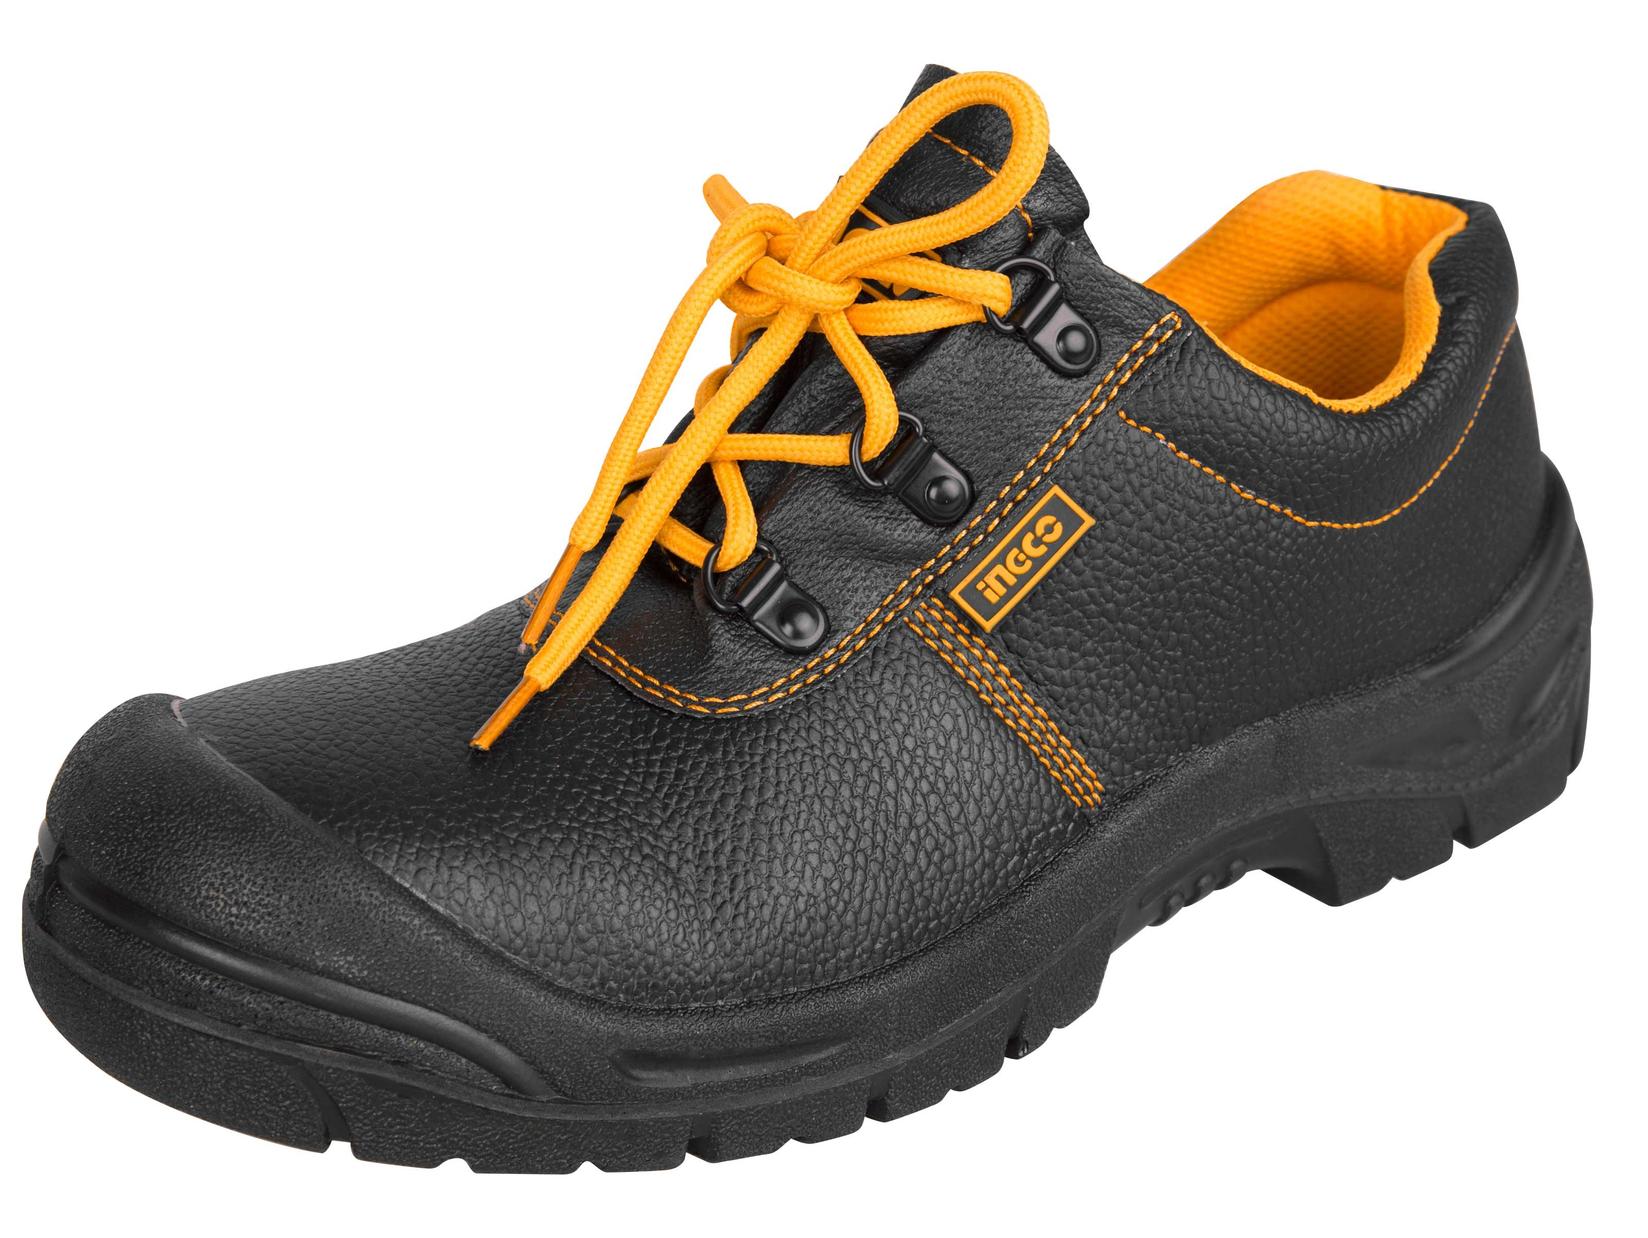 INGCO Zaštitne cipele plitke 43 crne